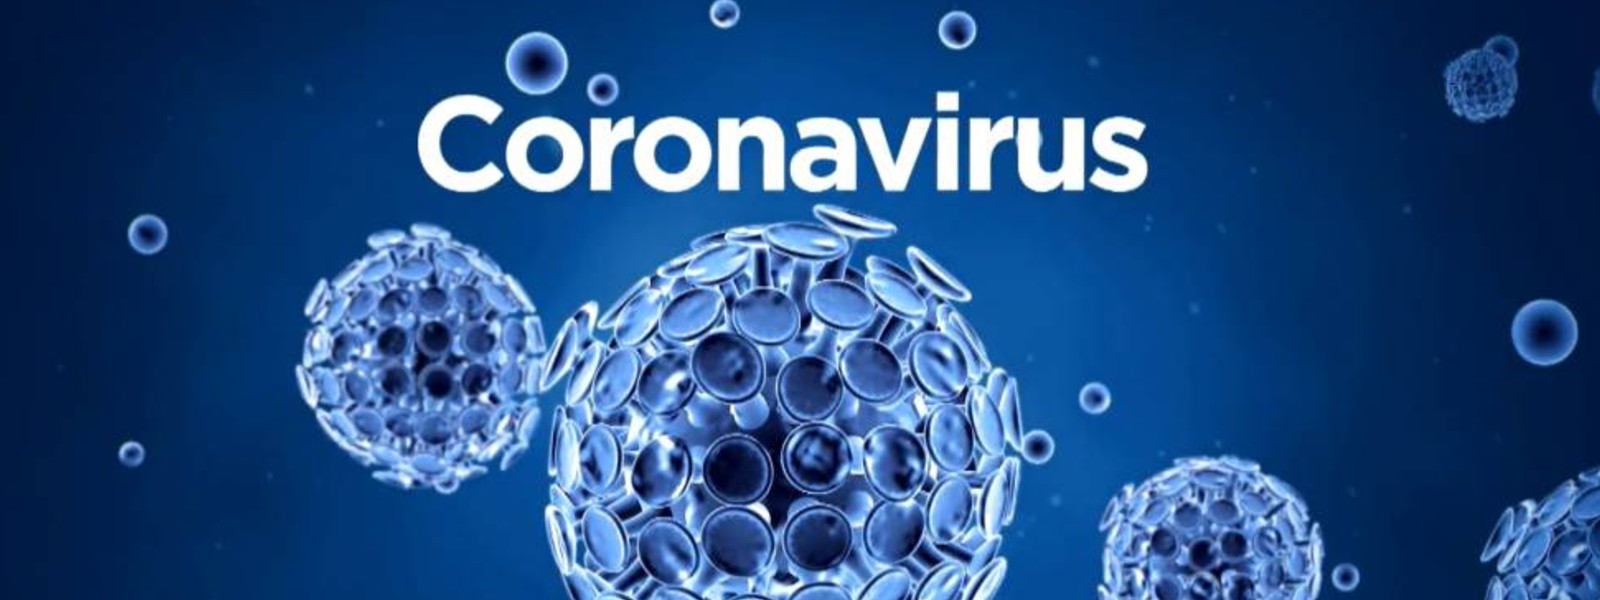 3 more Coronavirus cases confirmed in Sri Lanka